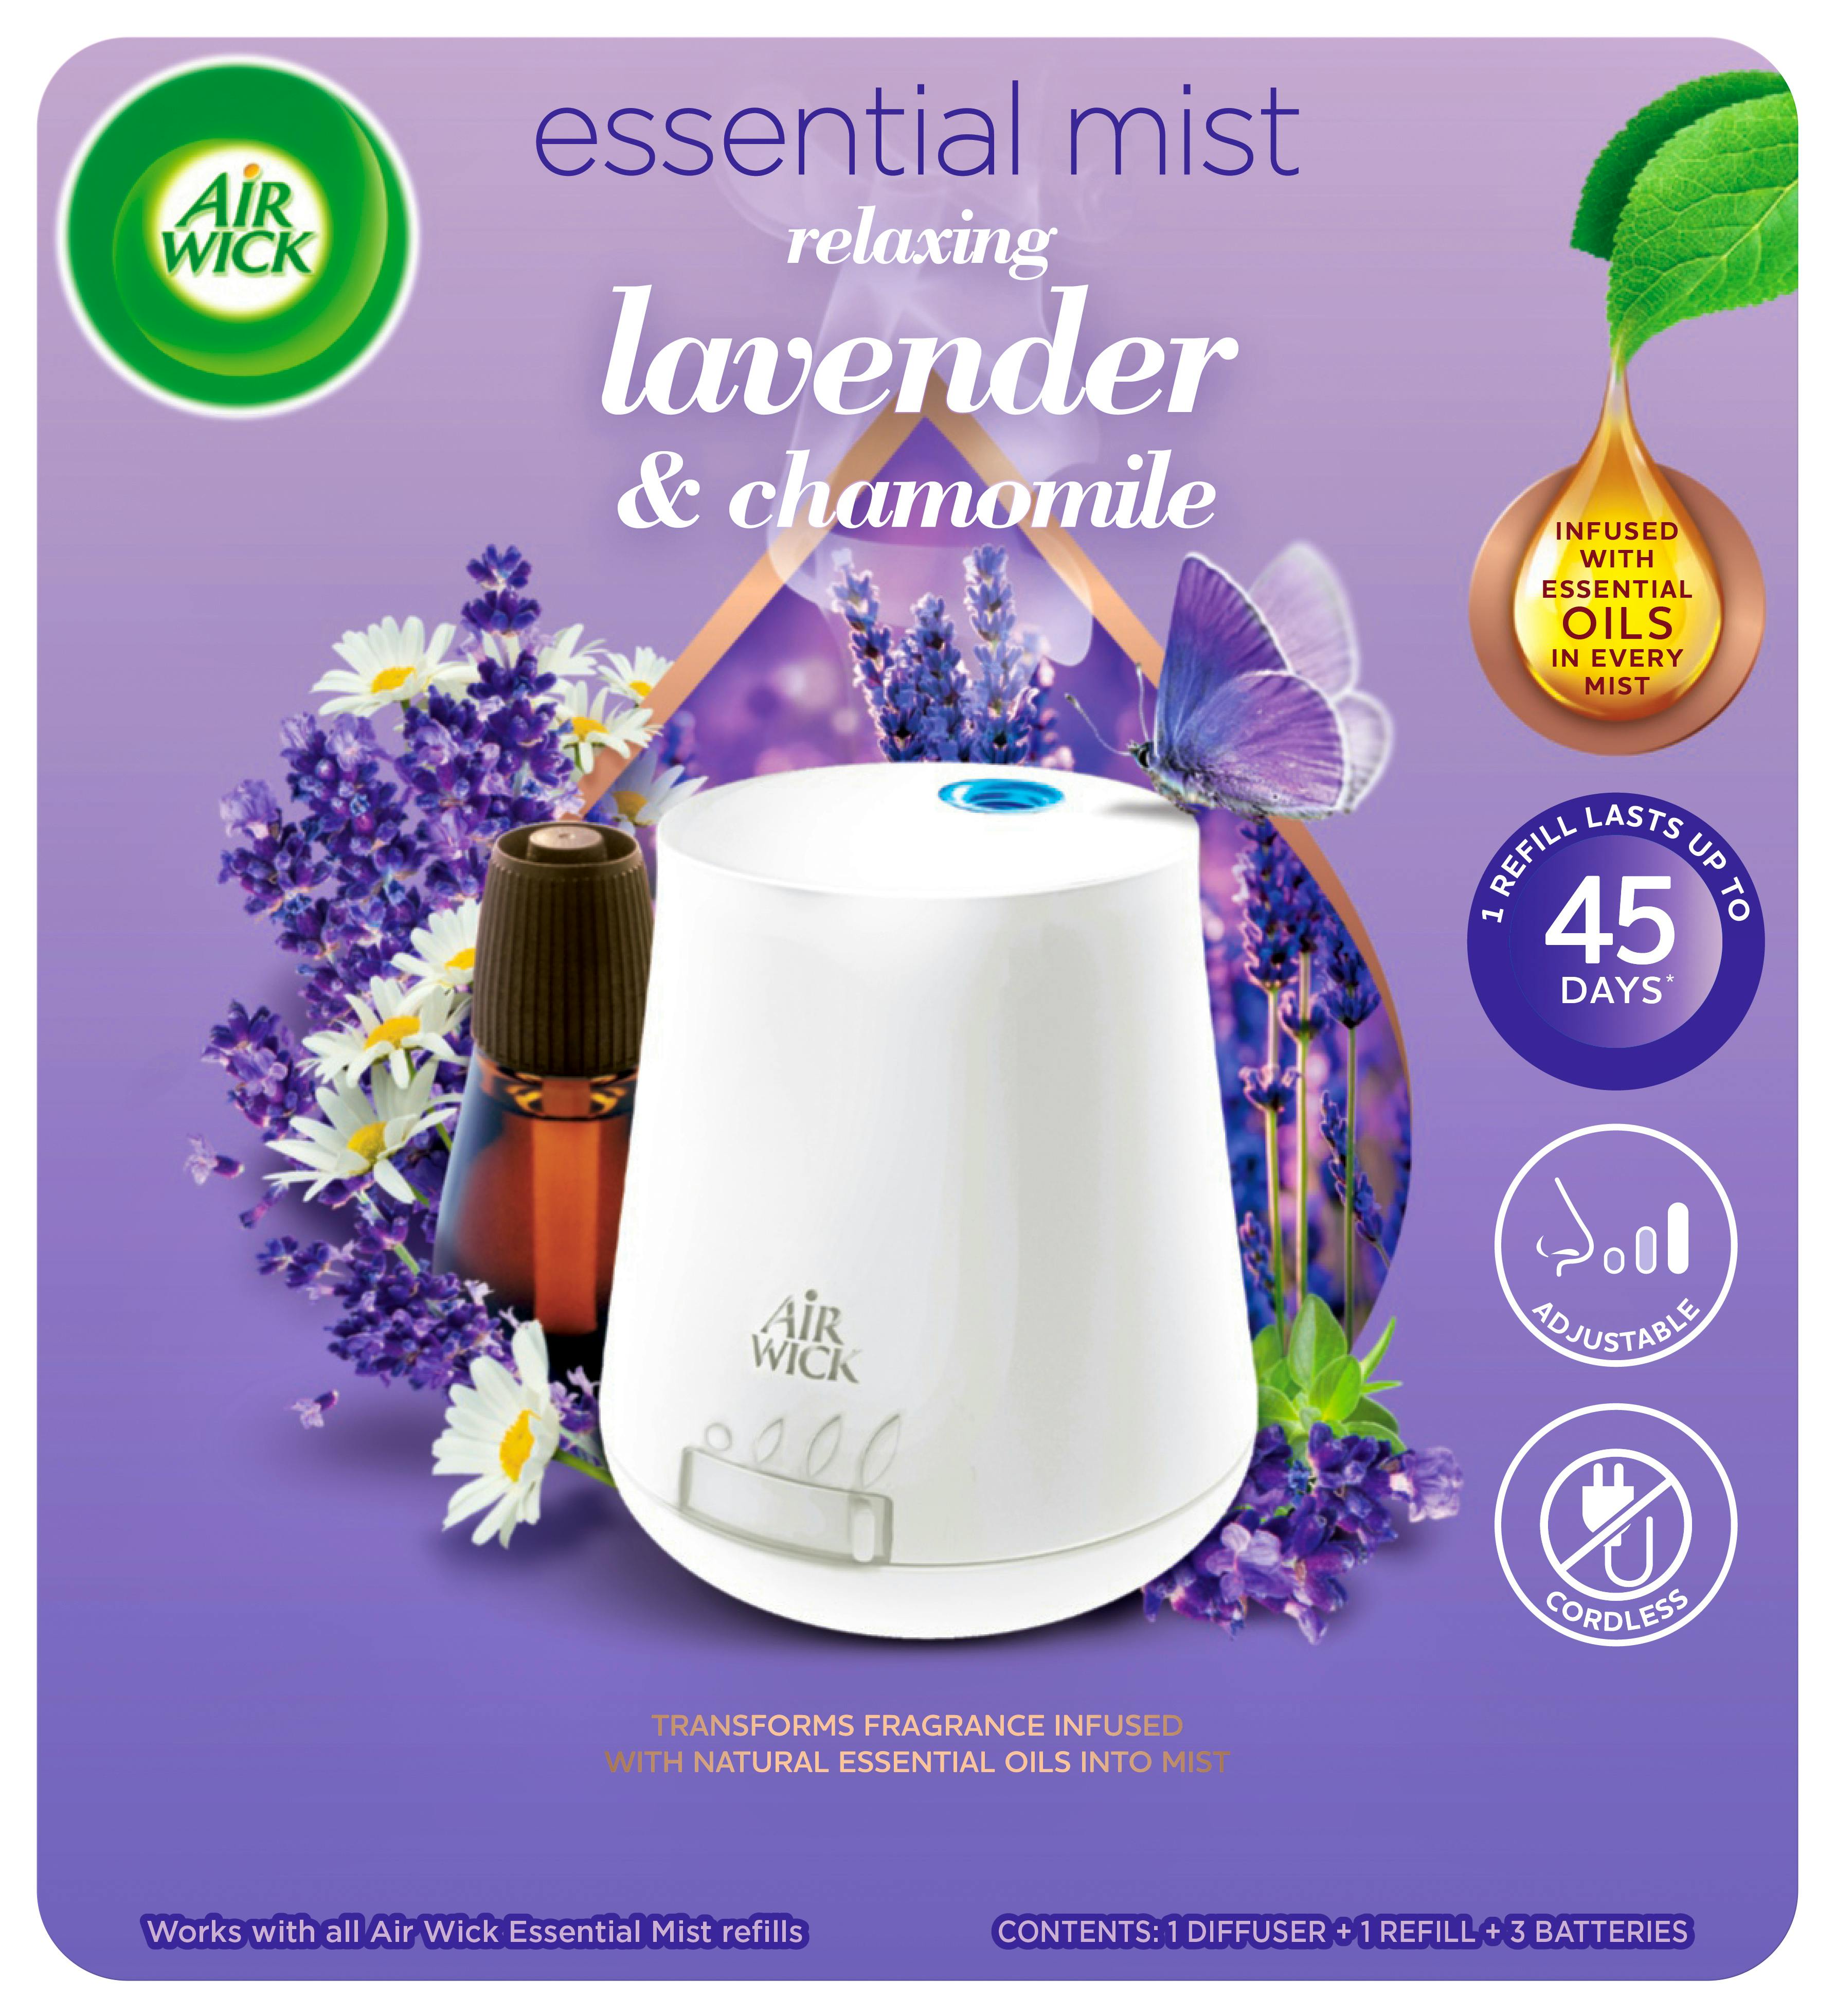 Air Wick Diffuseur D'Huiles Essentielles Essential Mist + 1 Recharge Parfum  Lavande 20 Ml - DRH MARKET Sarl